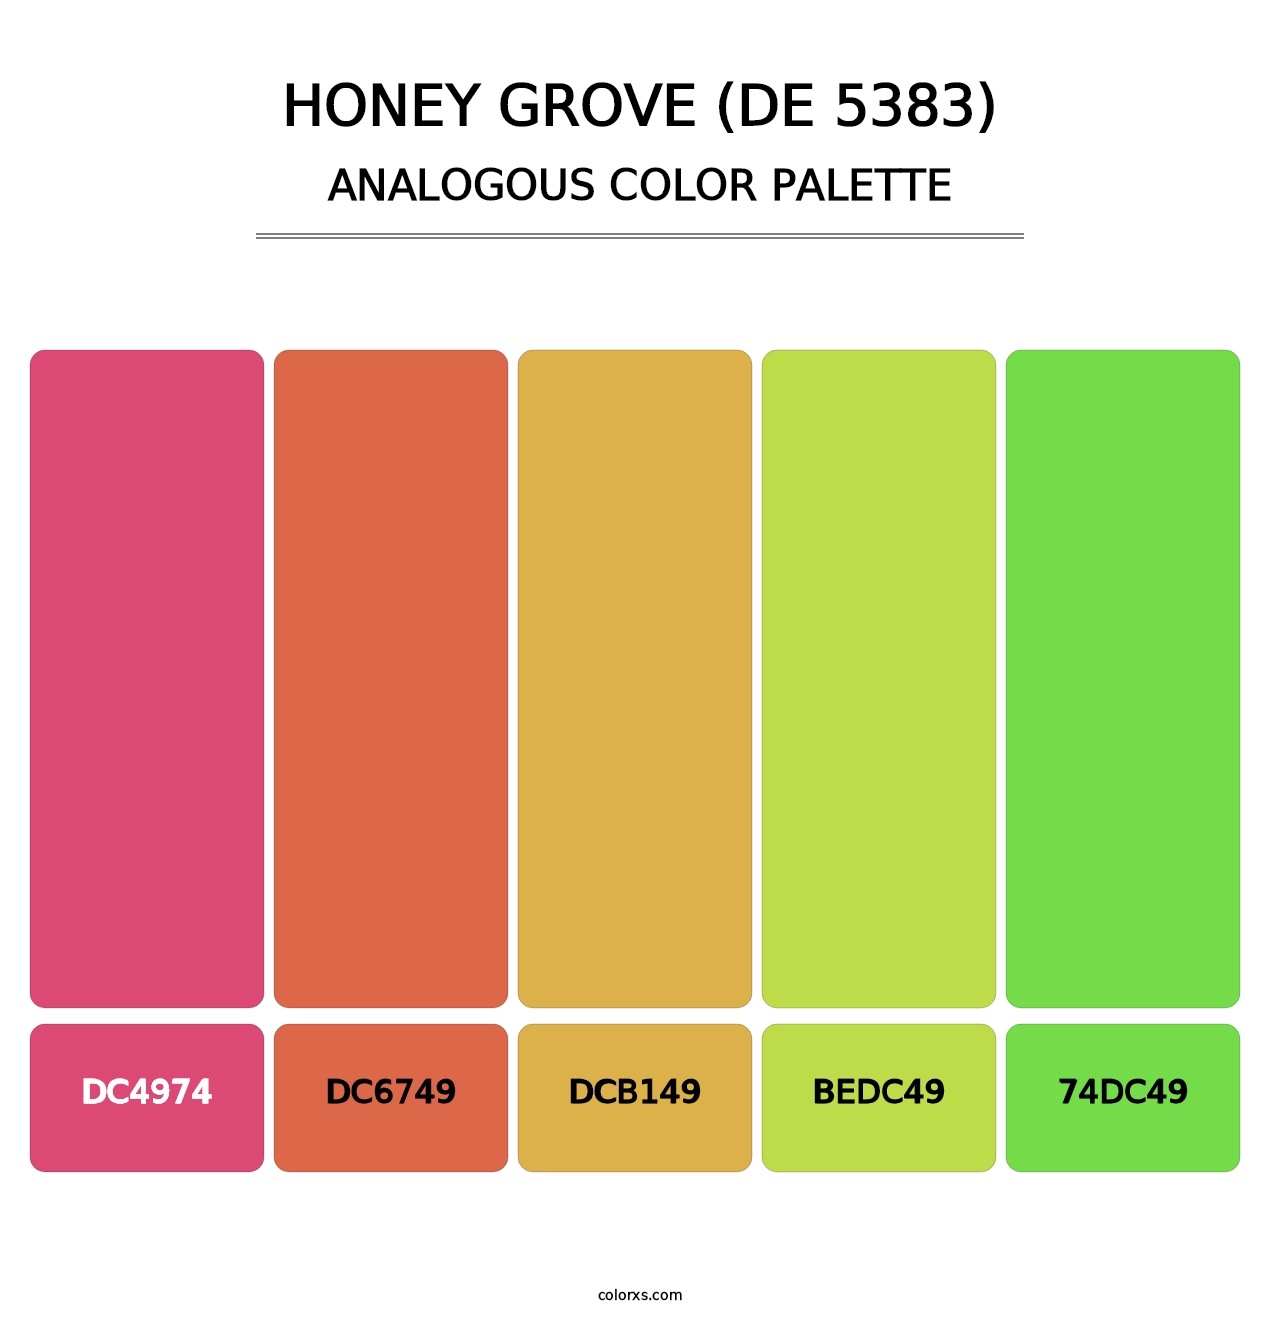 Honey Grove (DE 5383) - Analogous Color Palette